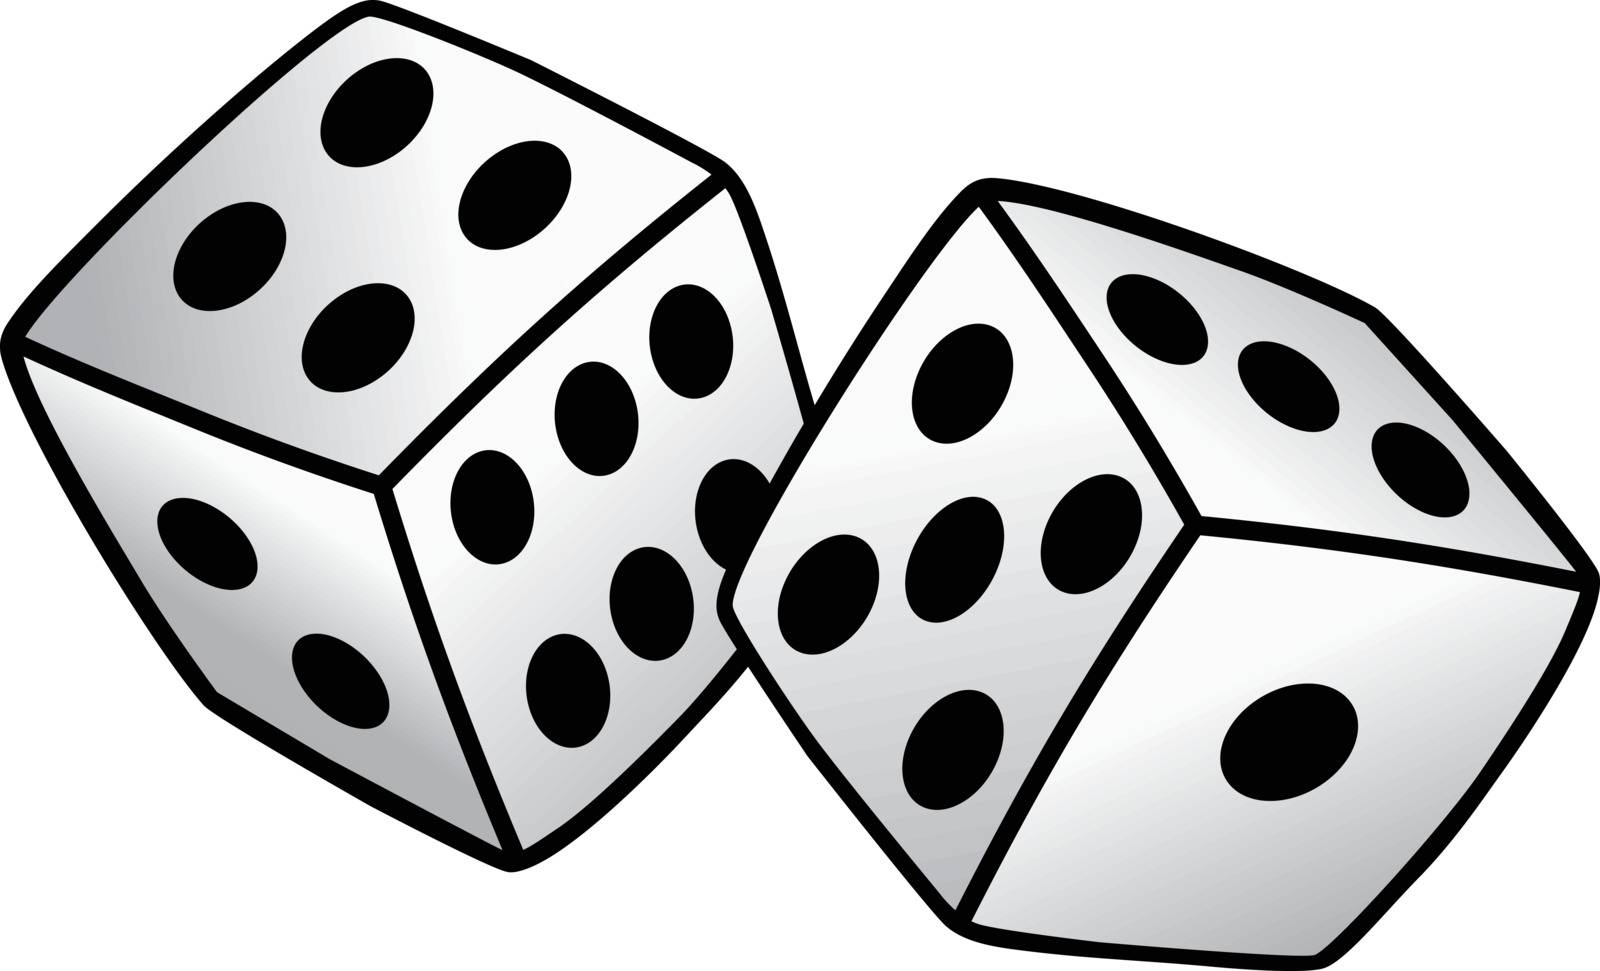 white dice risk taker gamble vector art illustration